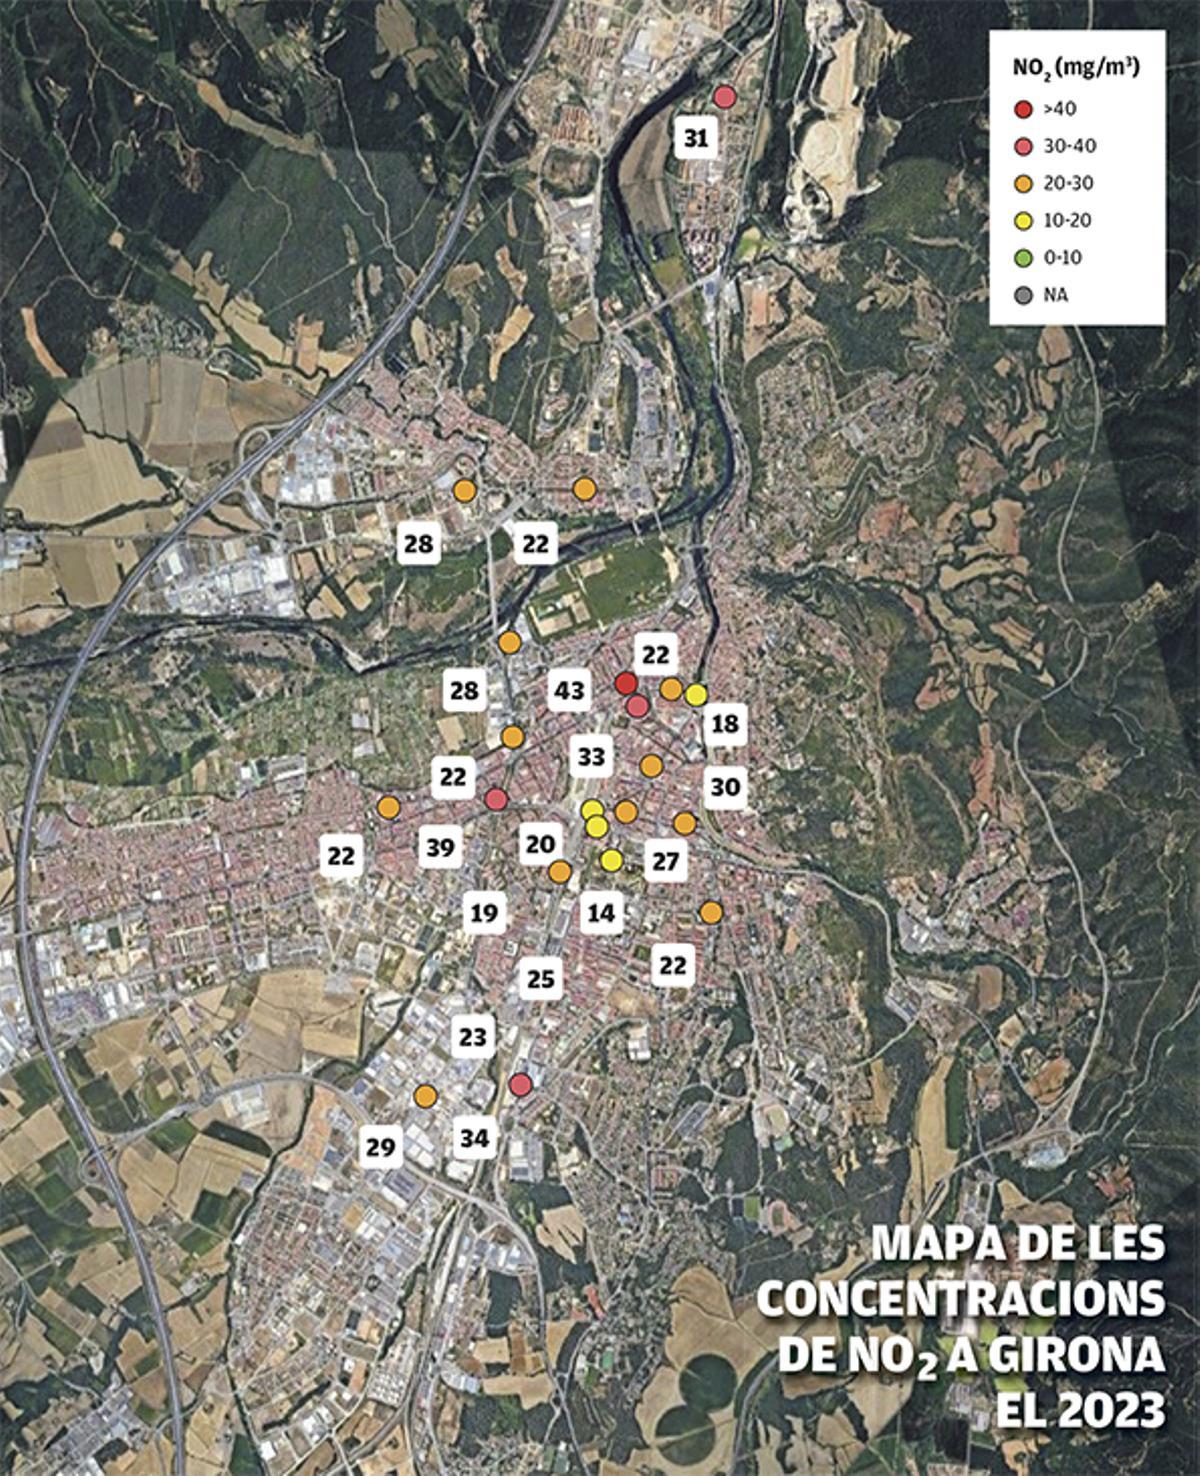 Mapa de les concentracions de N02 a Girona el 2023.